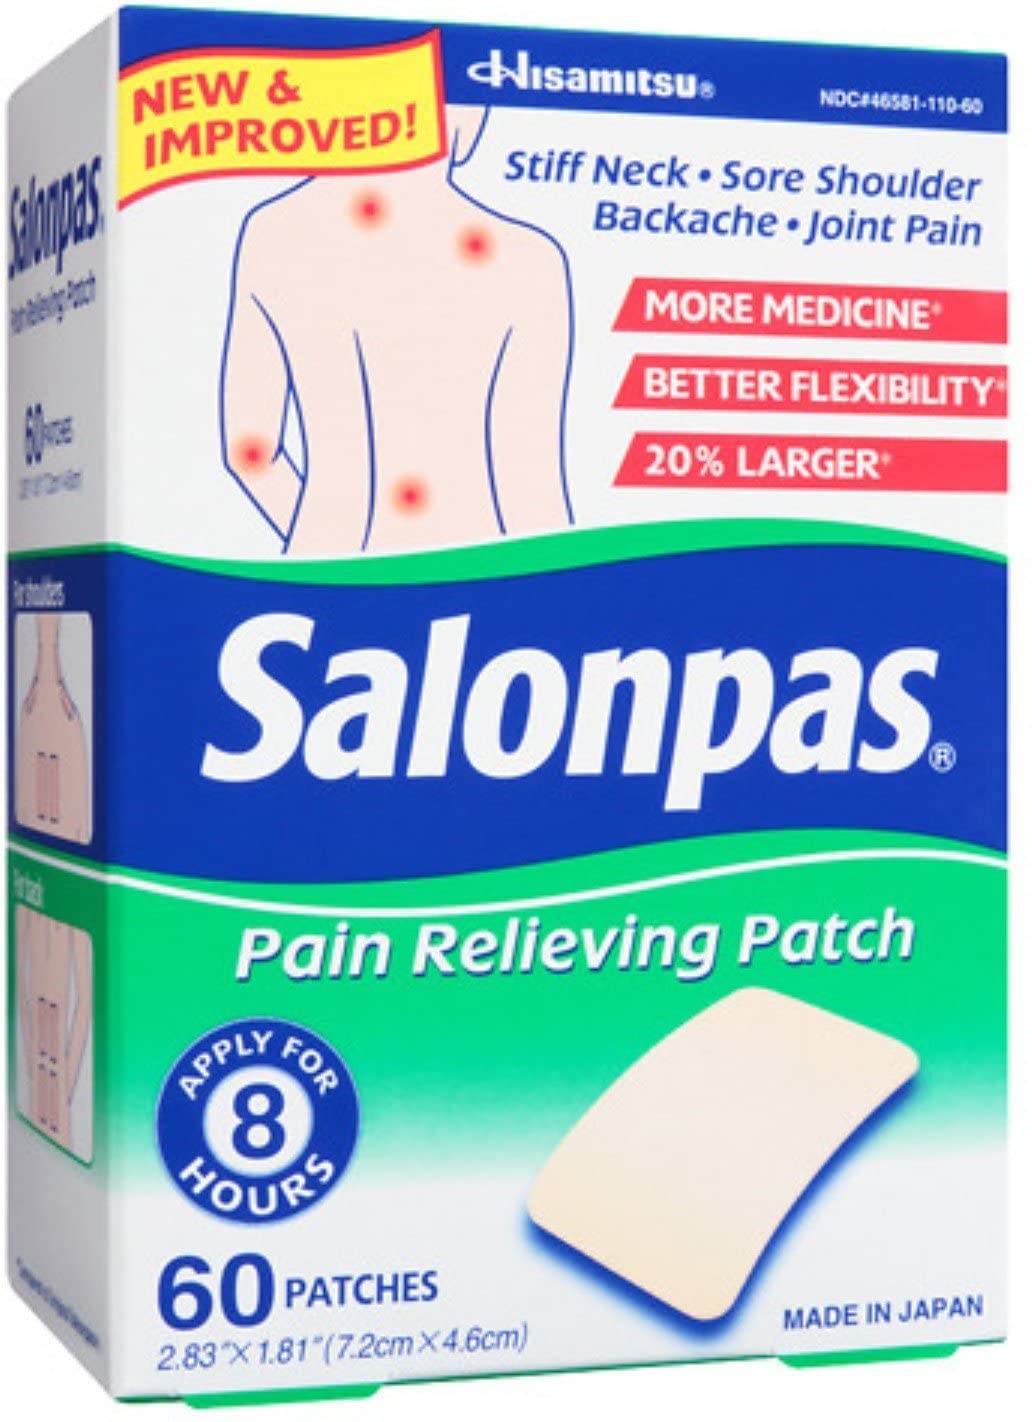 Salonpas® Pain Relief Patch LARGE